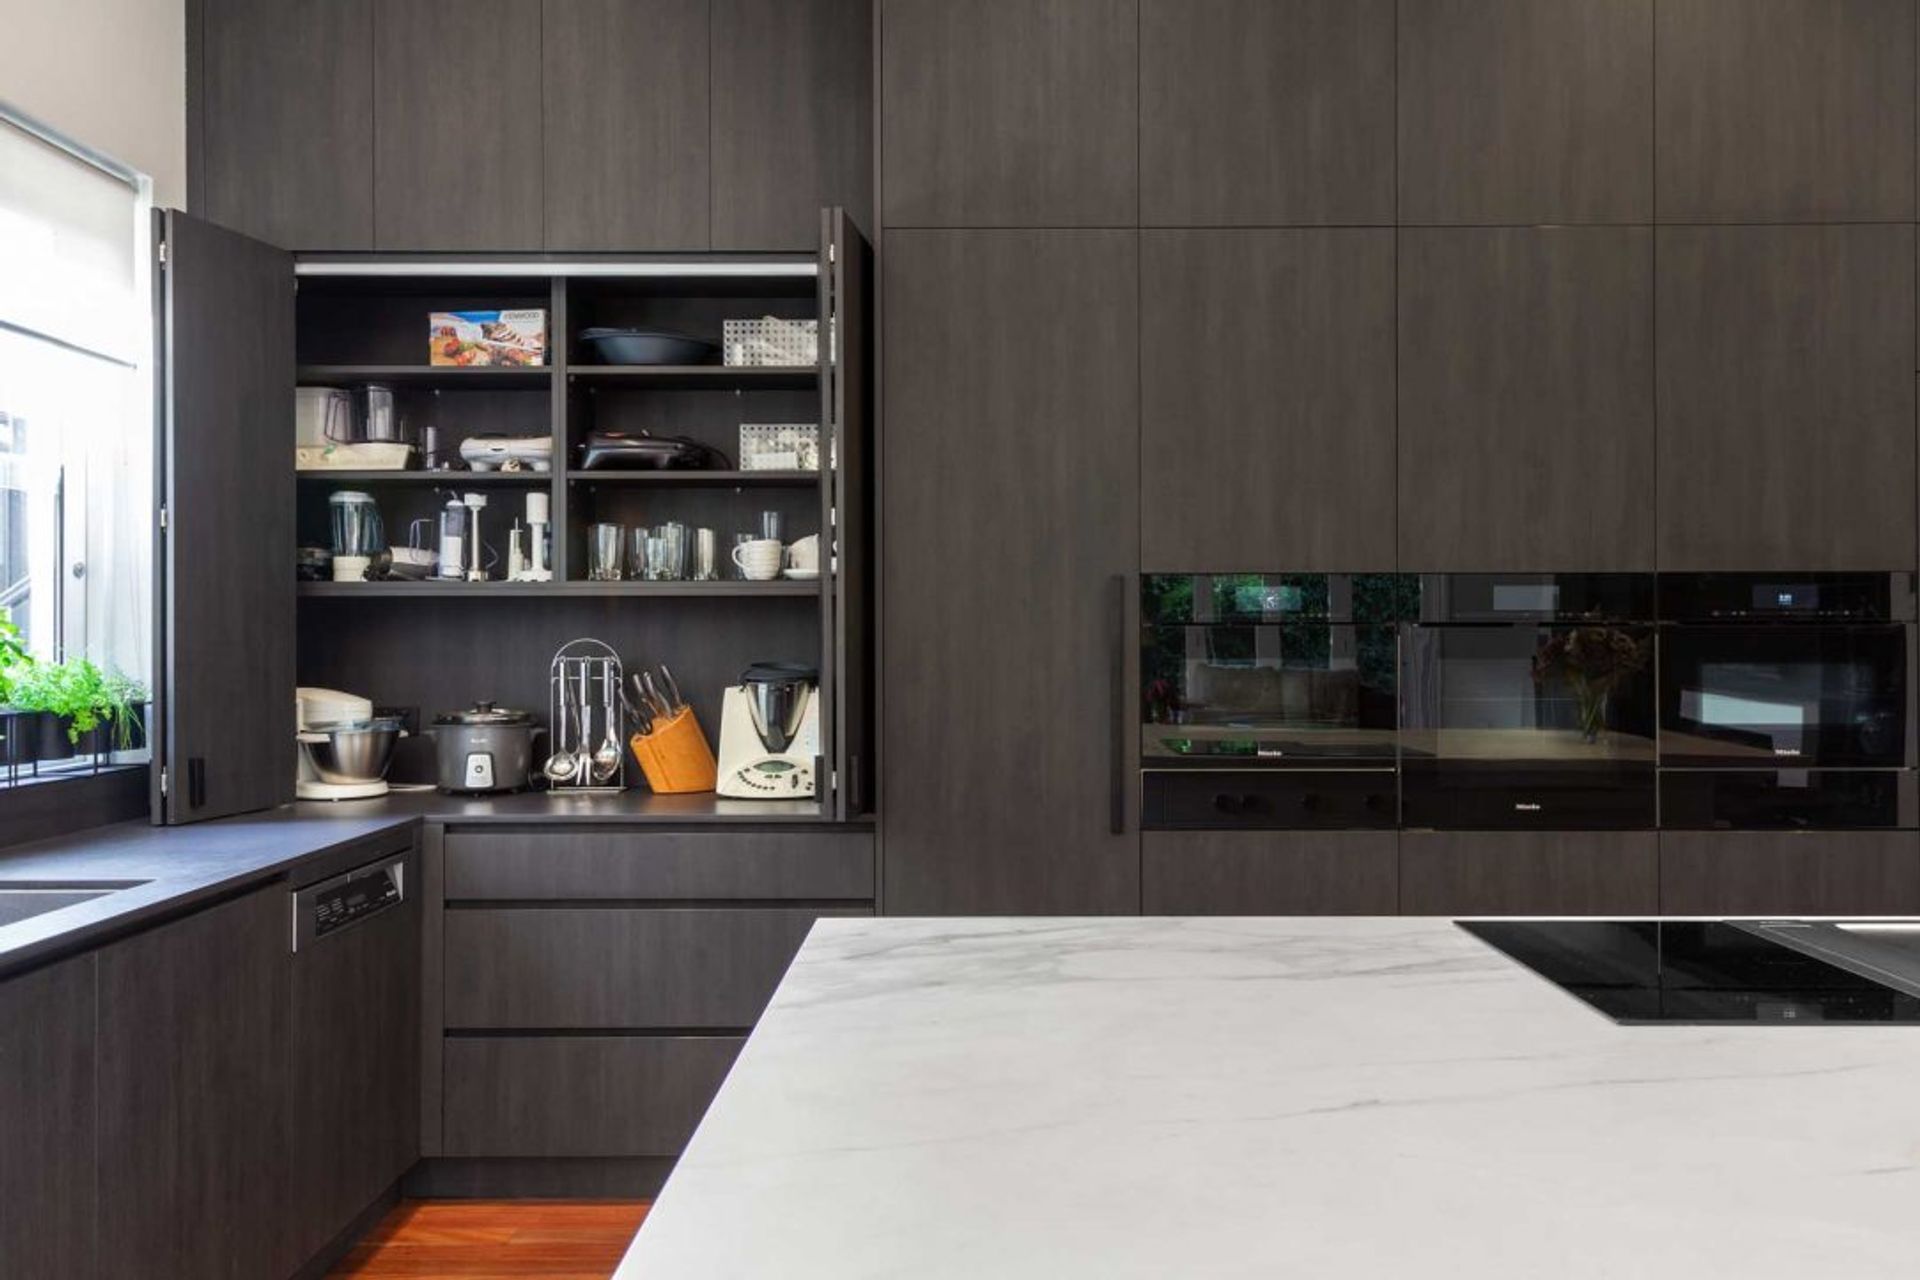 premier-kitchen-design-sydney-neolith-dekton-benchtop-splashback-dark-timber-white-appliance-cupboard-1084x723.jpg